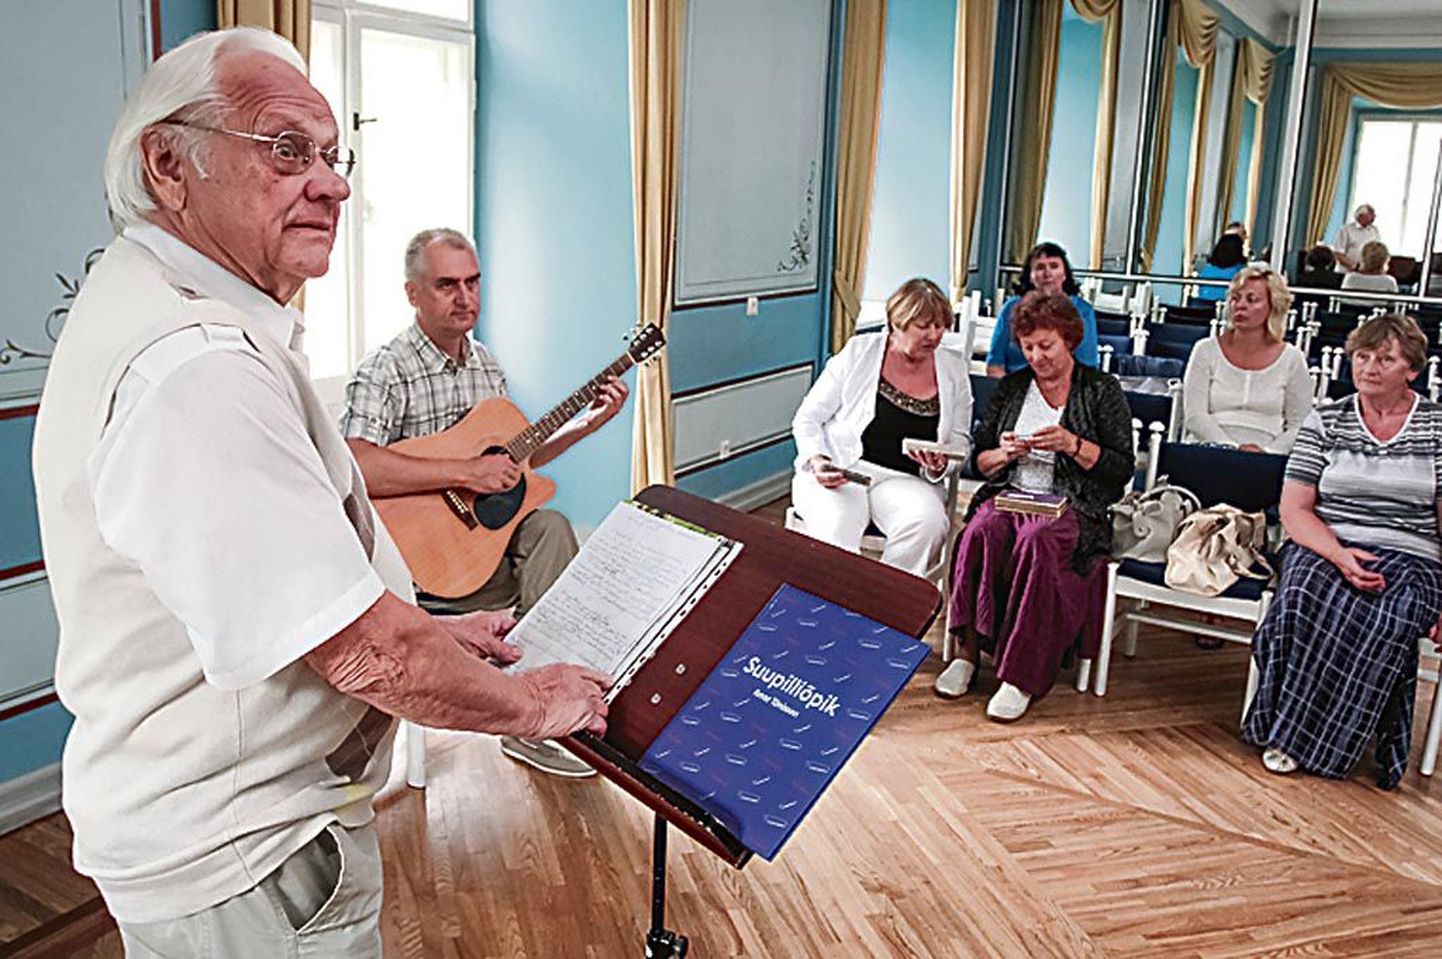 Suupilliõpiku autor Ilmar Tõnisson tutvustas muusikaõpetajatele suupilli õpetamise metoodikat, raamatu üllitamise eesmärk oli äratada suuremat huvi suupillimängu vastu ja tõsta suupilli prestiiži.